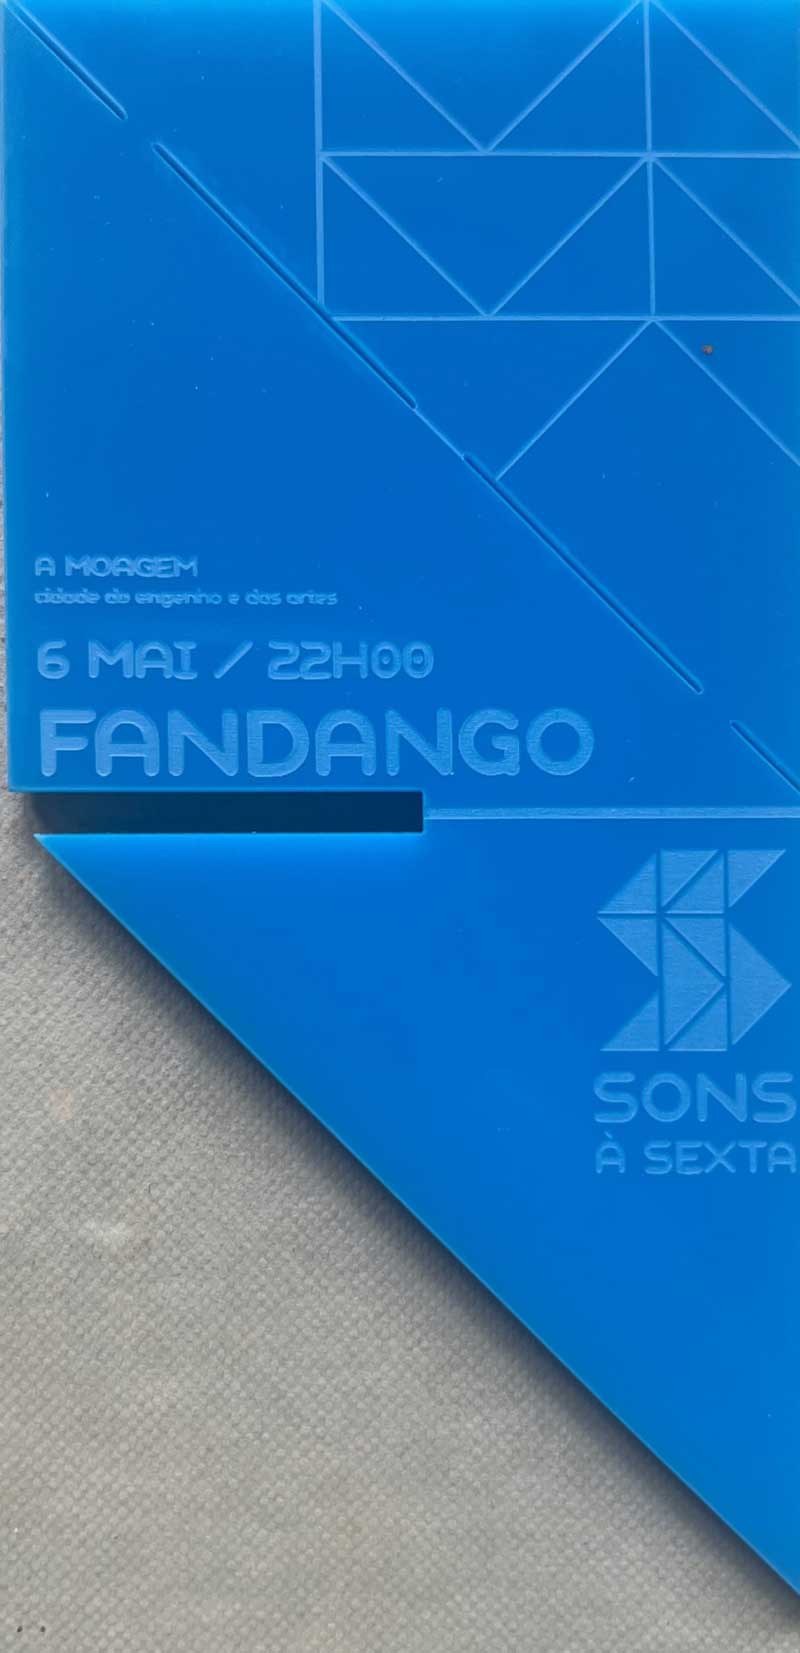 Fandango, Sons à Sexta, Fundão - Livre trânsito